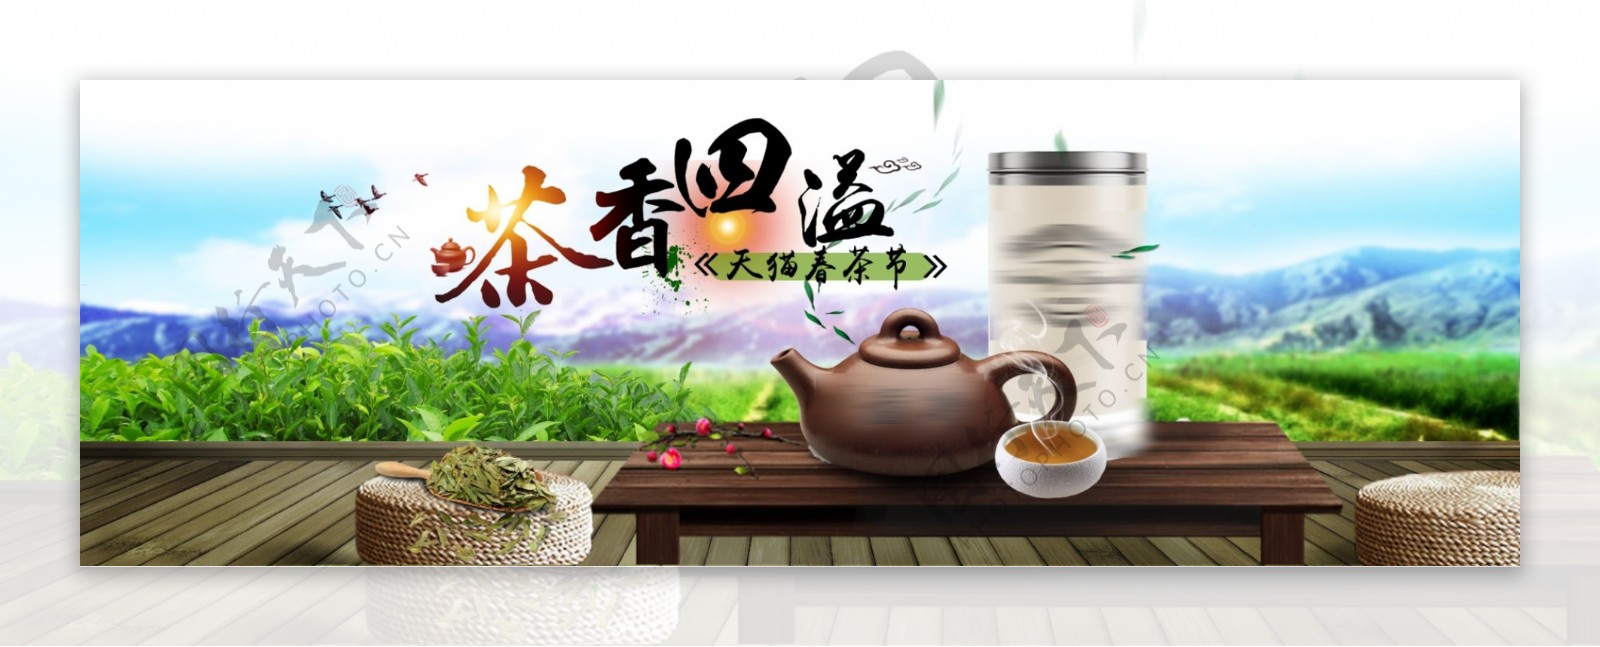 淘宝茶叶海报素材天猫茶叶海报